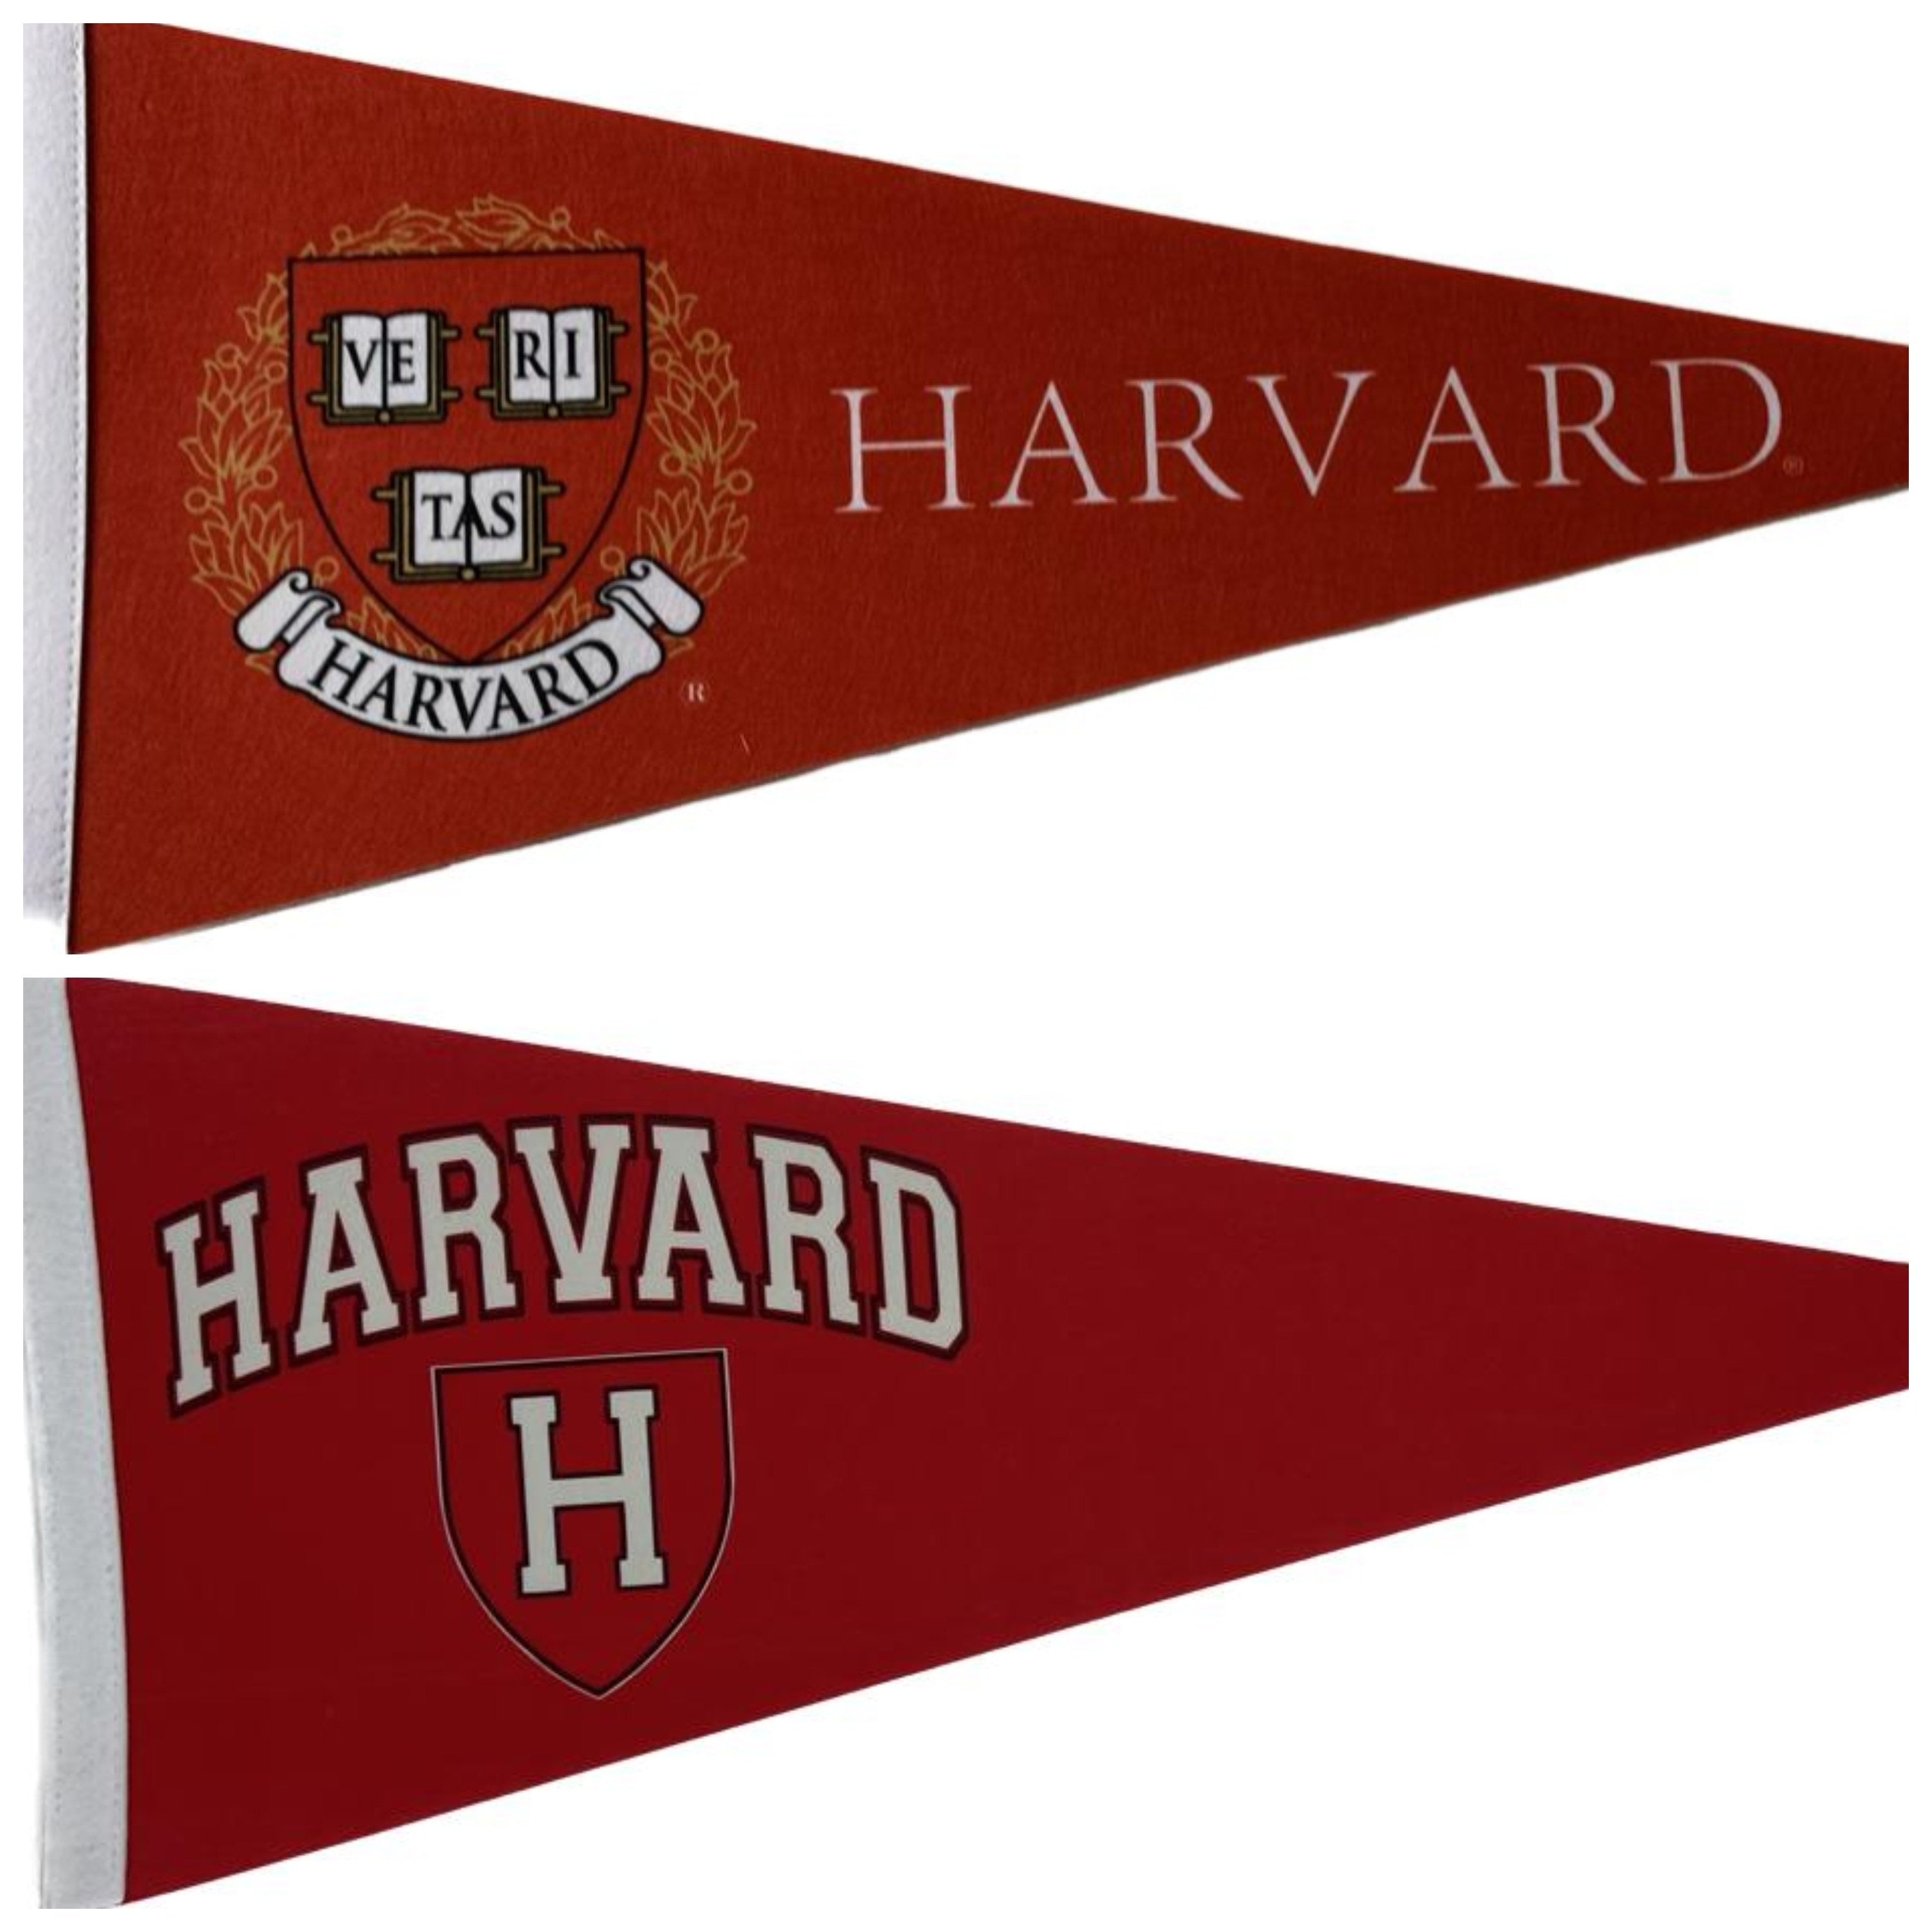 Harvard University NCAA american football wimpels vaantje vlaggetje vlag fanion wimpel vlag fahne university harvard gift harvard uni logo - Vintage